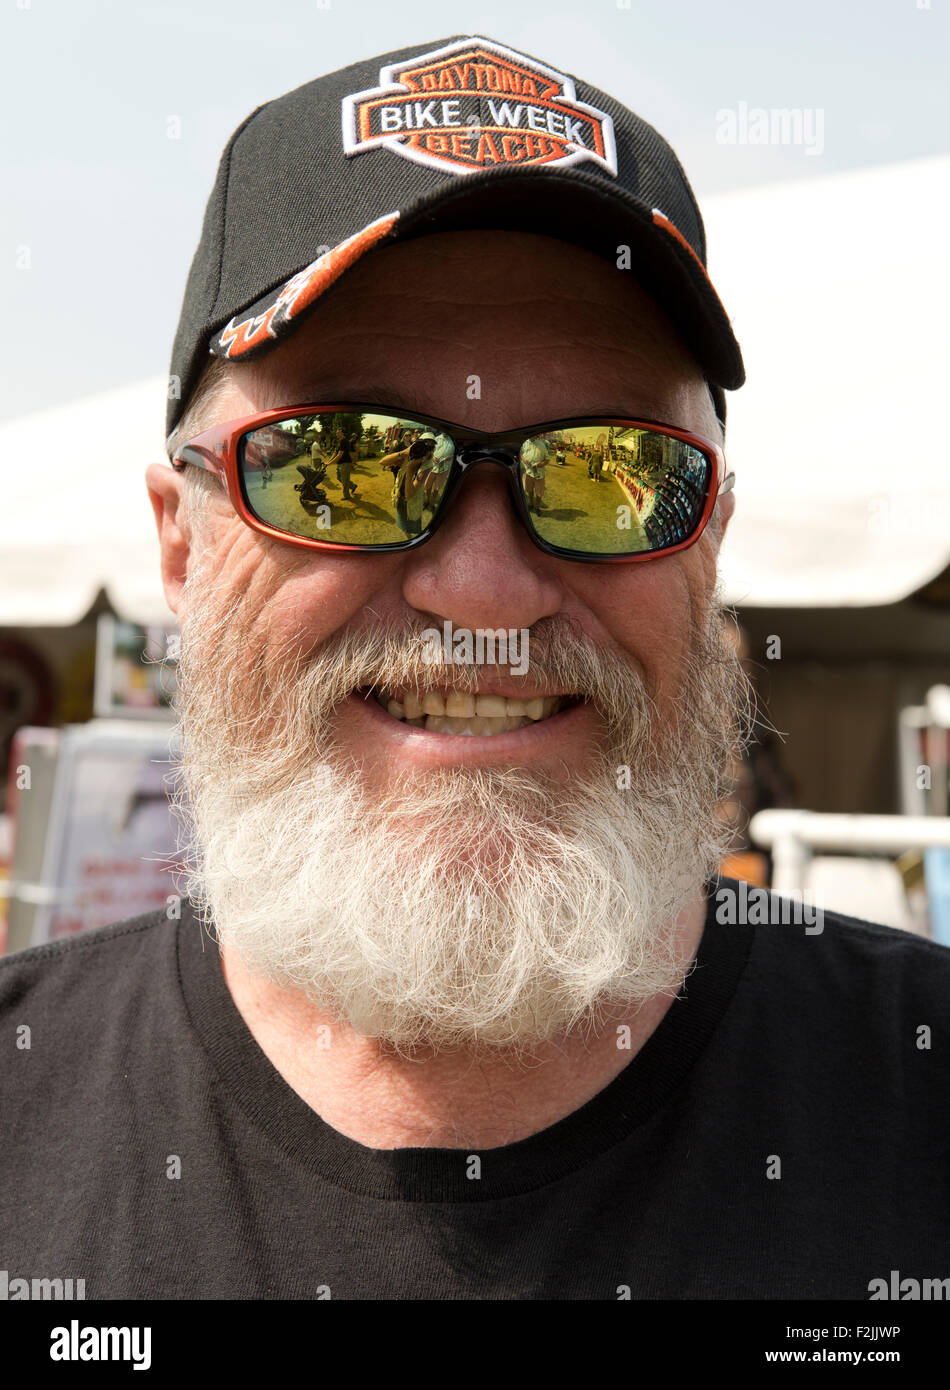 Ein Mann in verspiegelten Sonnenbrillen und Bart im Washington County Fair in Greenwich, New York Staat, Vereinigte Staaten von Amerika Stockfoto